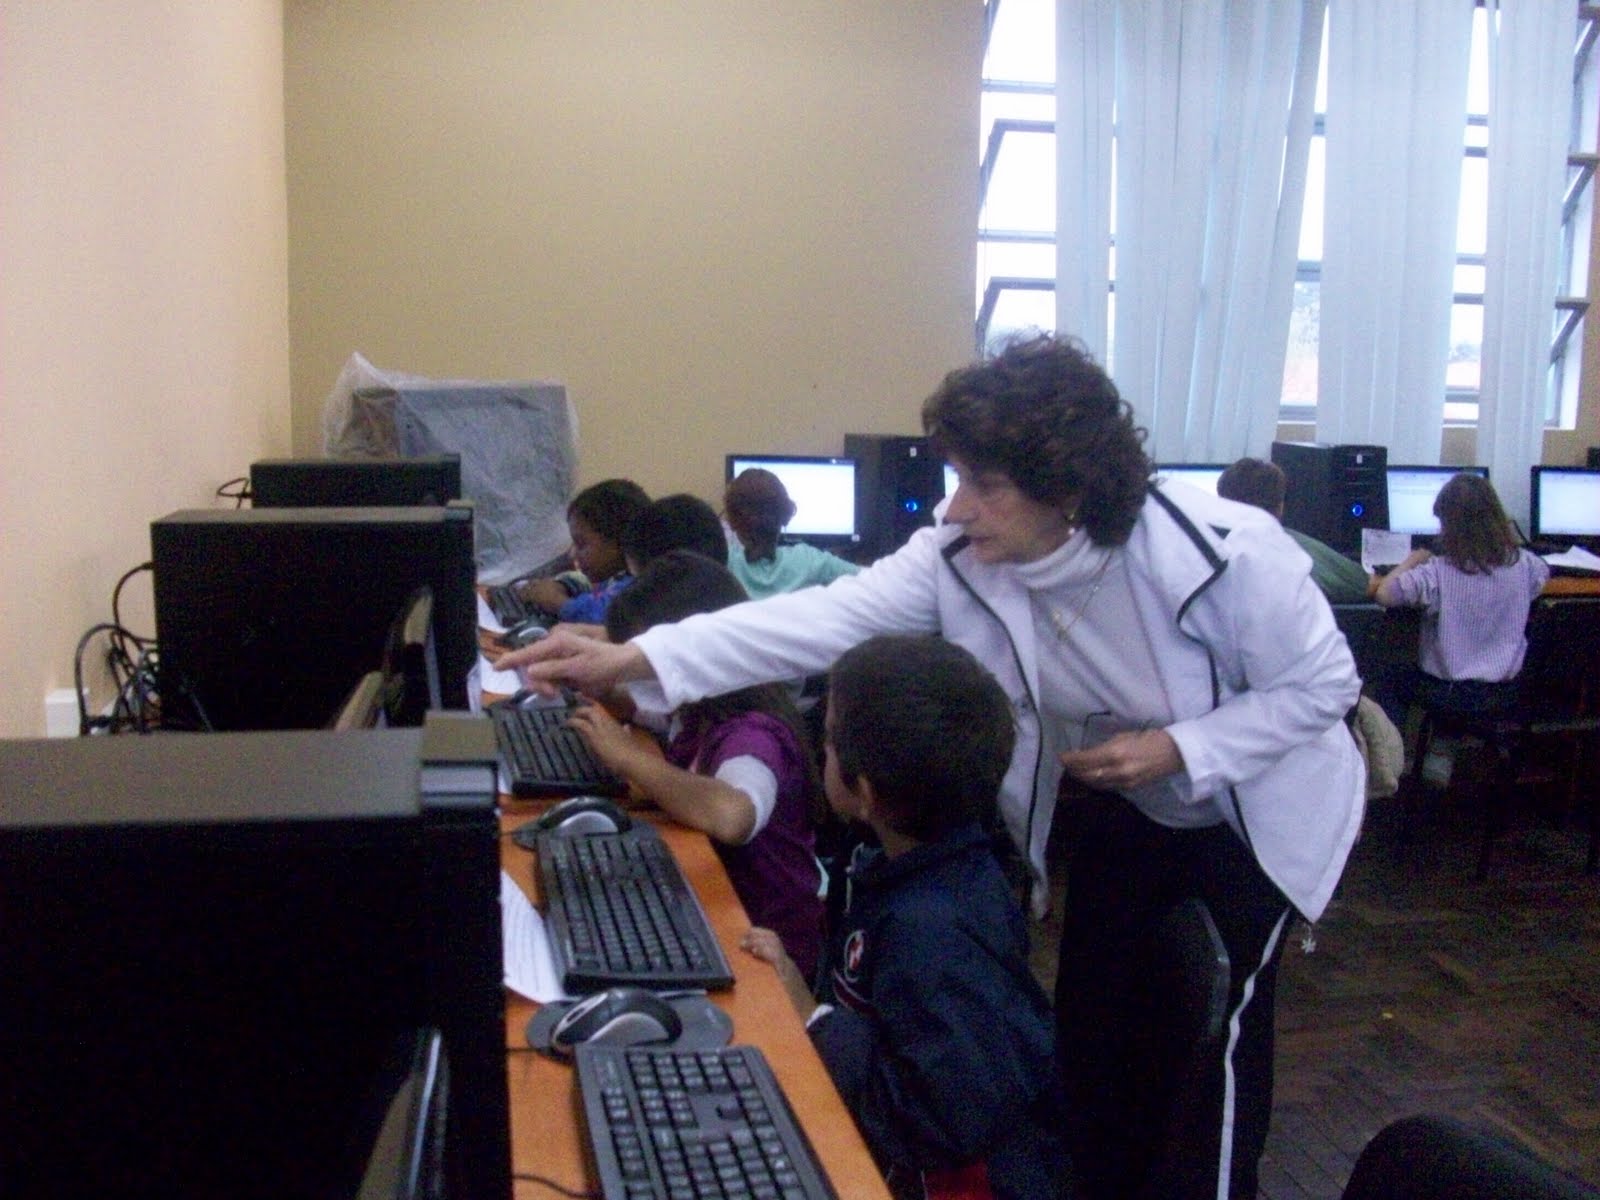 Sites de pesquisa :: Informática na Educação Infantil